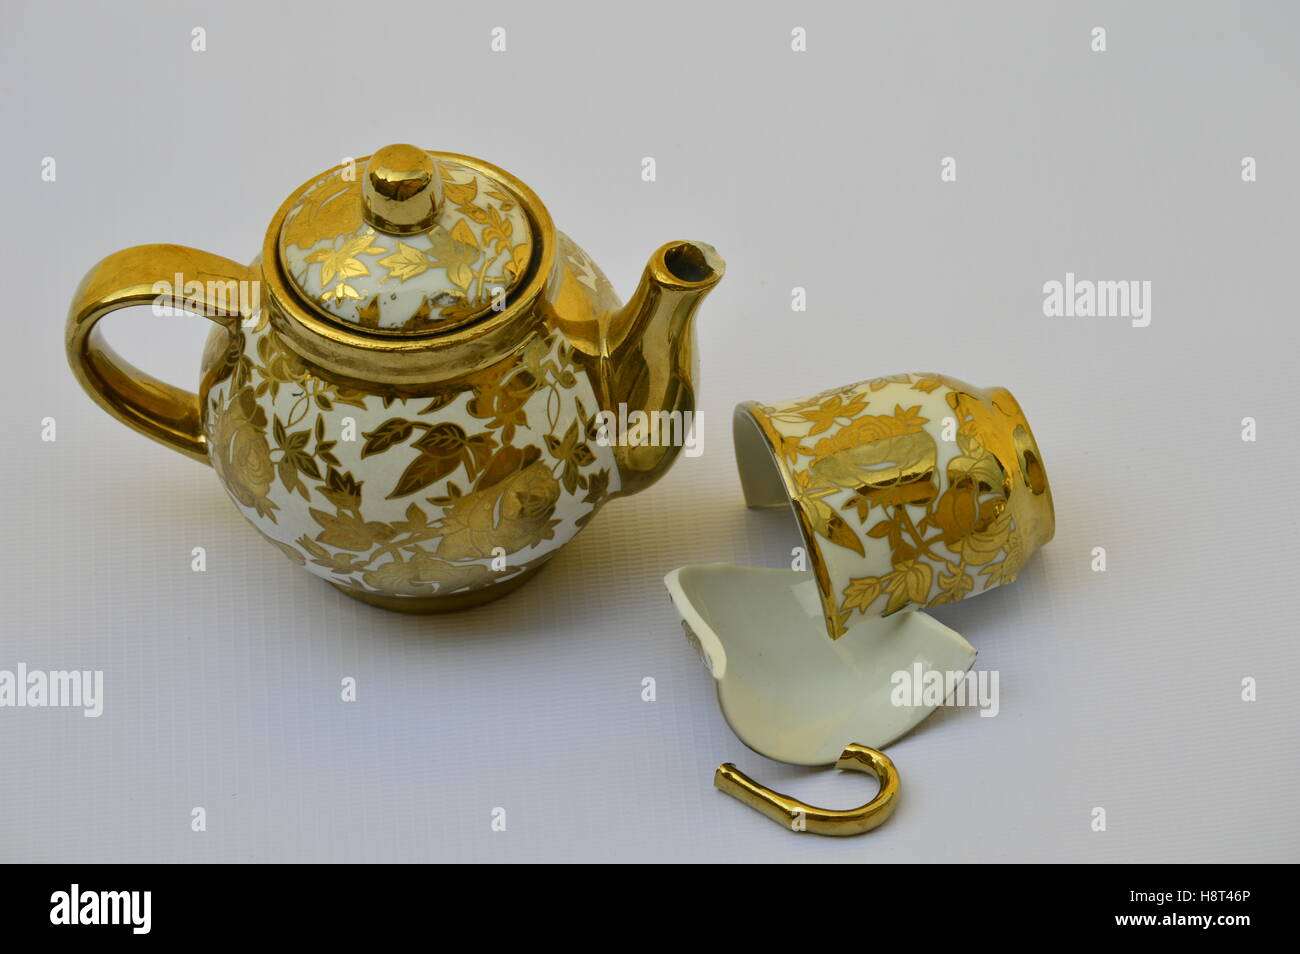 Broken cup tea and teapot Stock Photo - Alamy